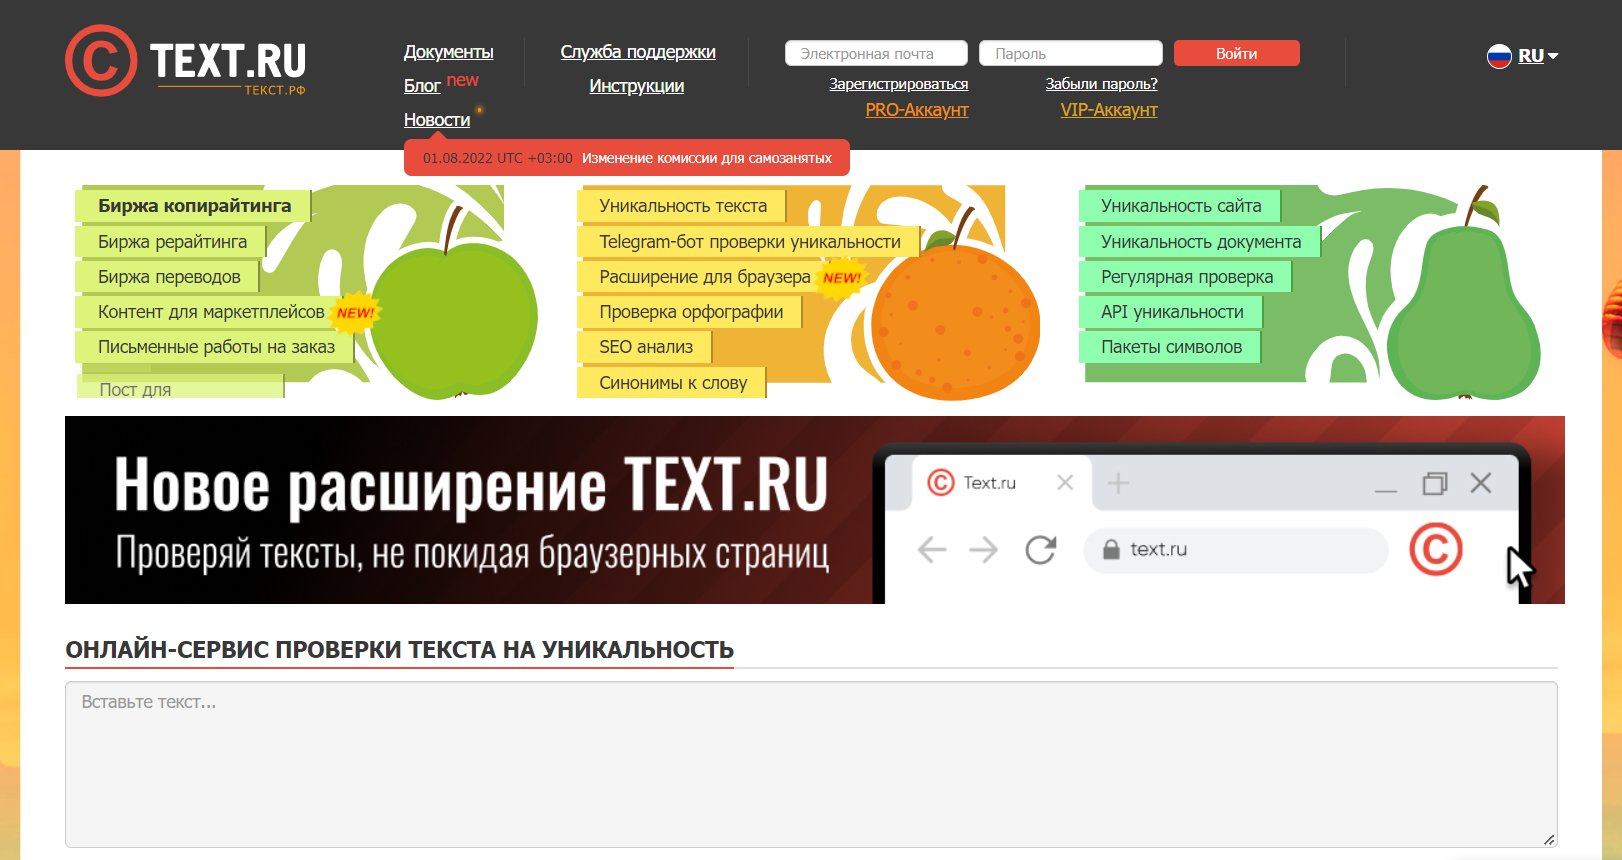 Текст.ру сайт онлайн-сервиса